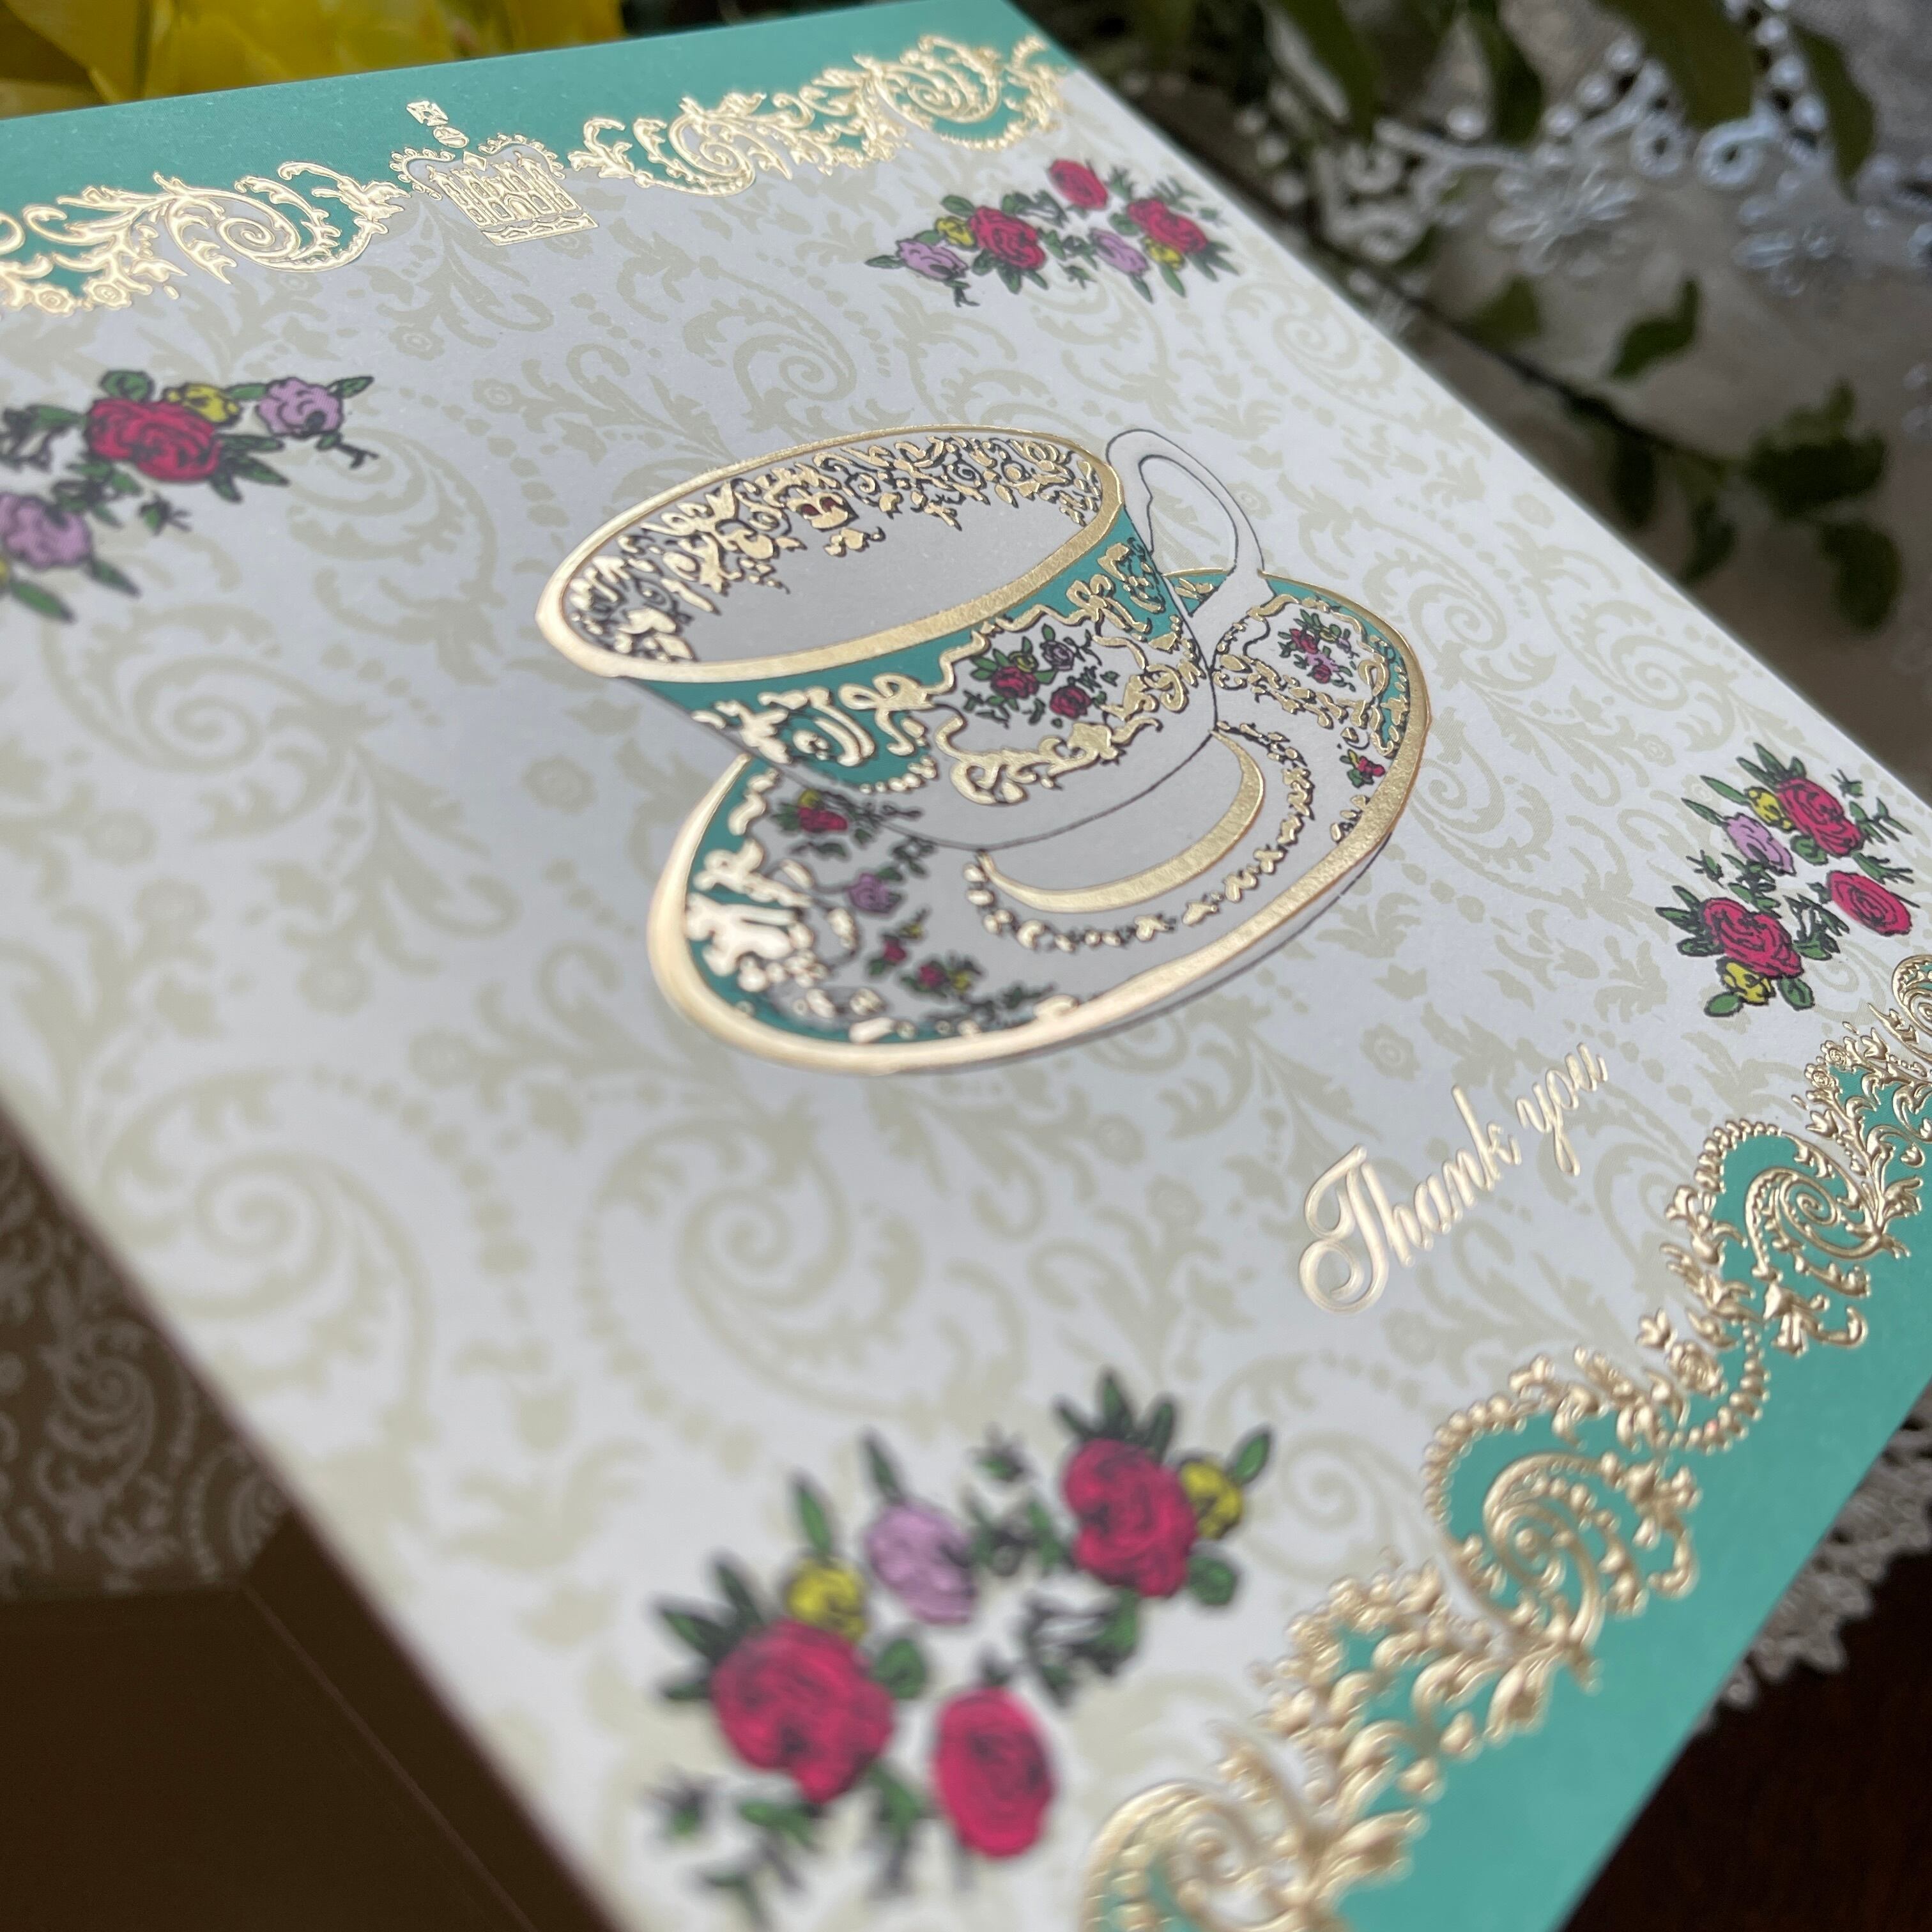 『Royal Palace』カードBOX入　2種 8枚入 Royal Palace thank you cards in a box